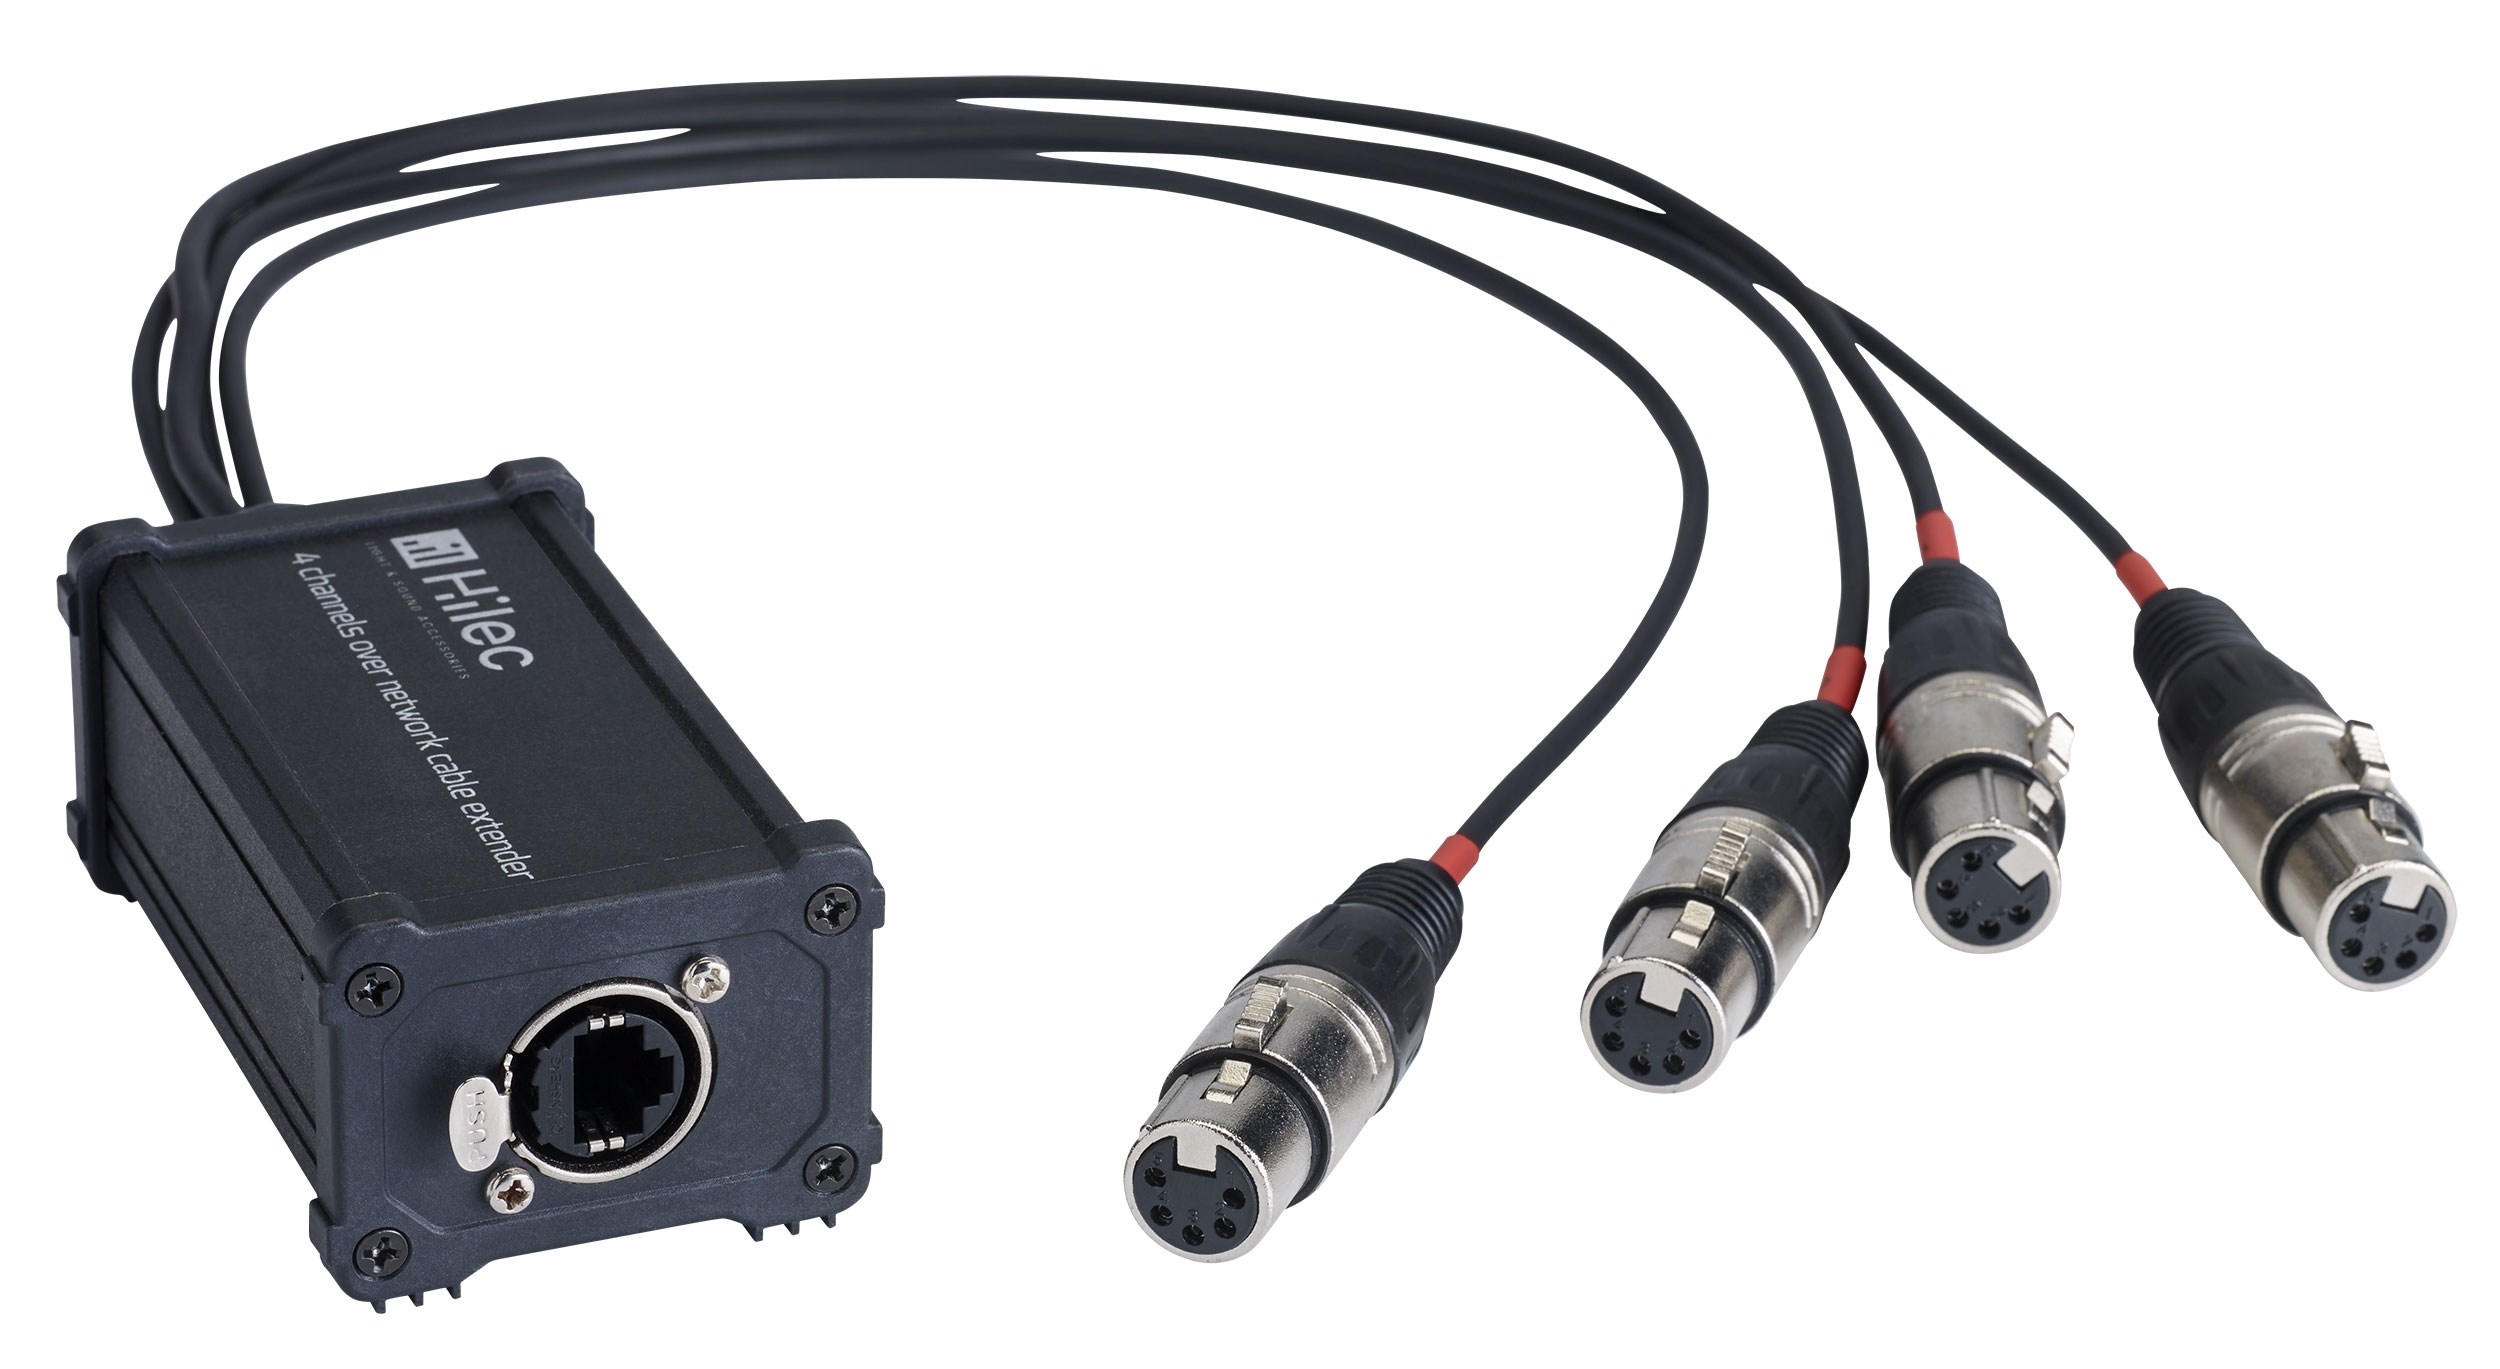 RJ45 / XLR5F adapterdoos voor audio of DMX signaal